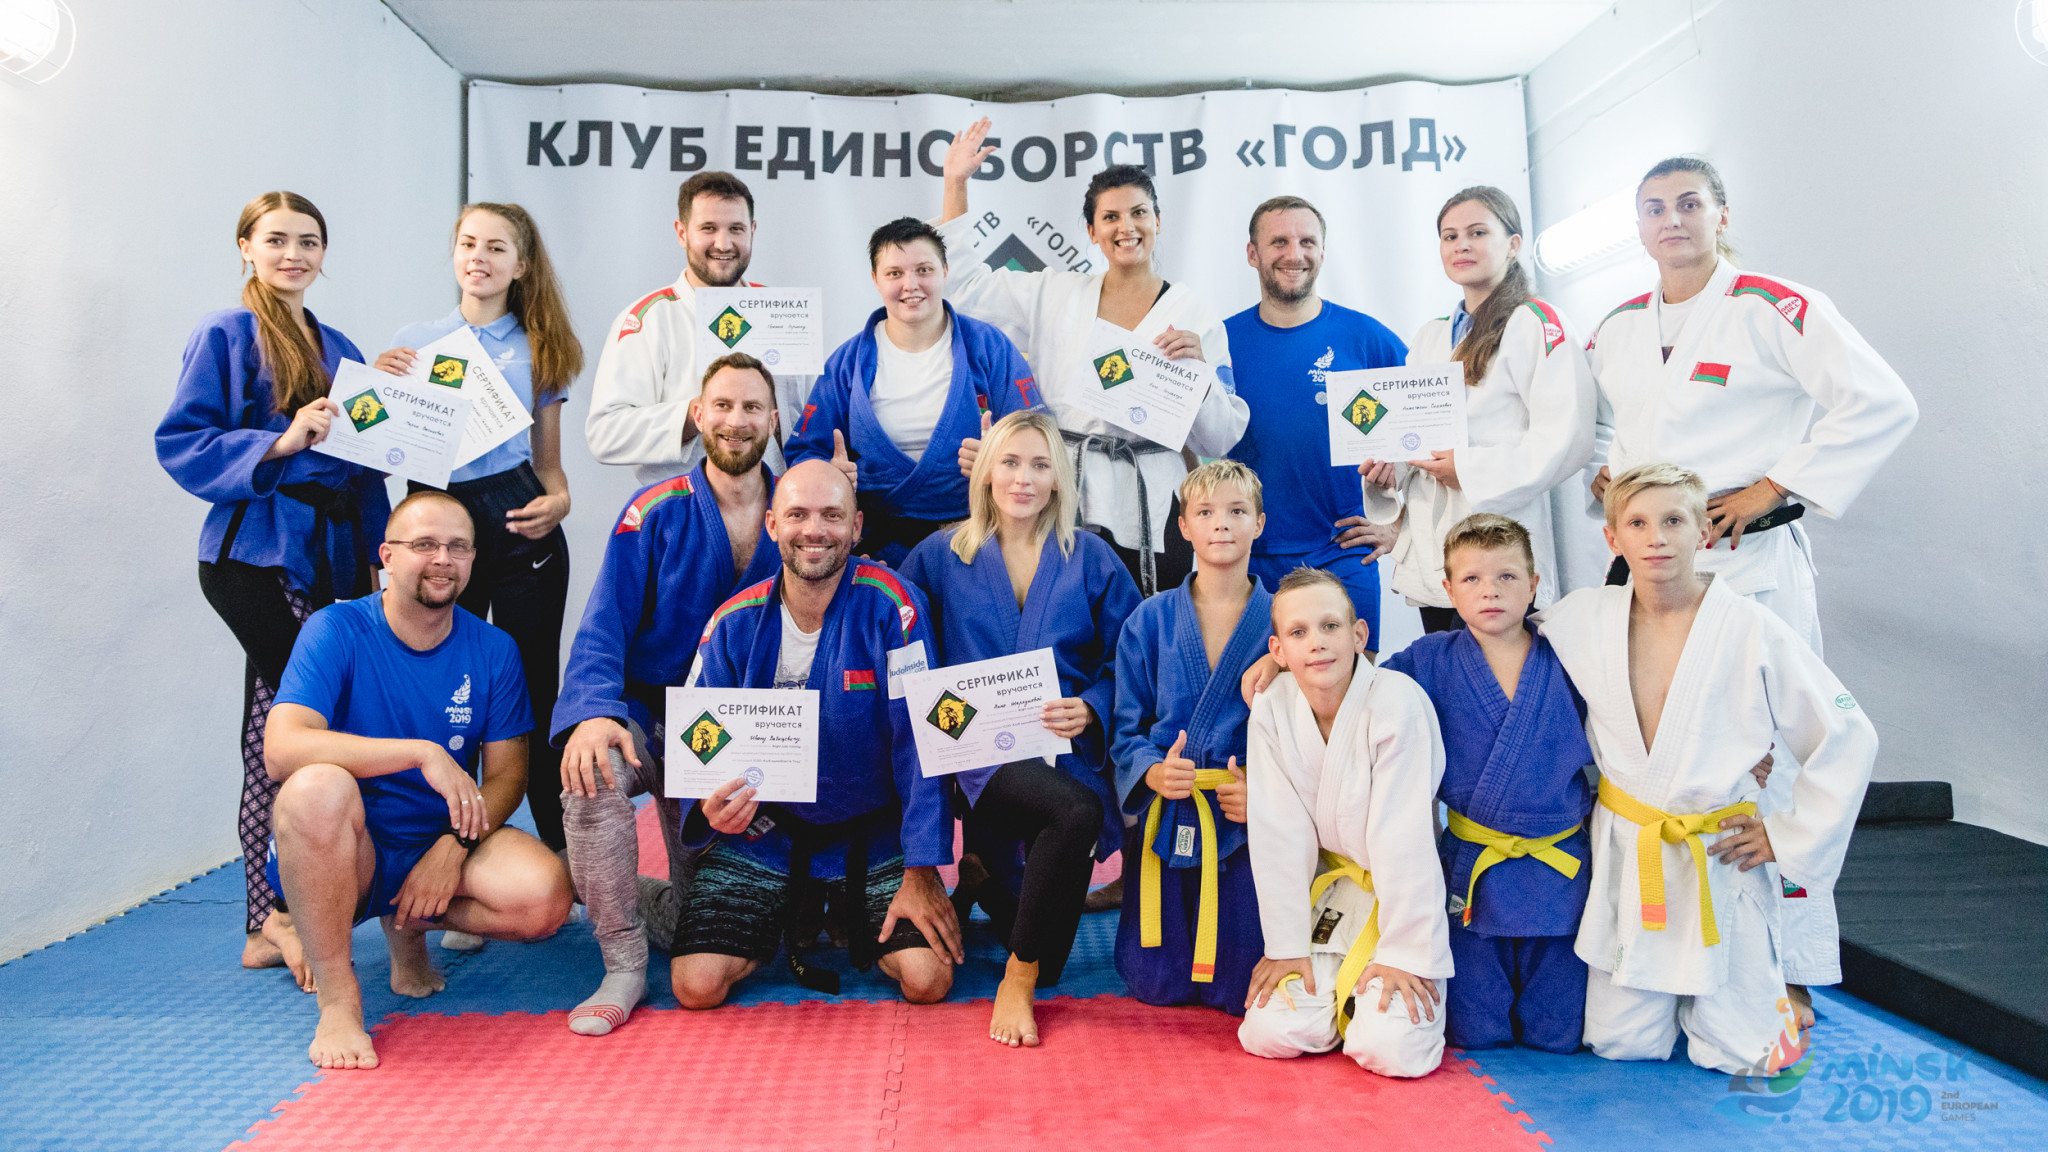 Minsk 2019 host second "Bright Team" event in judo